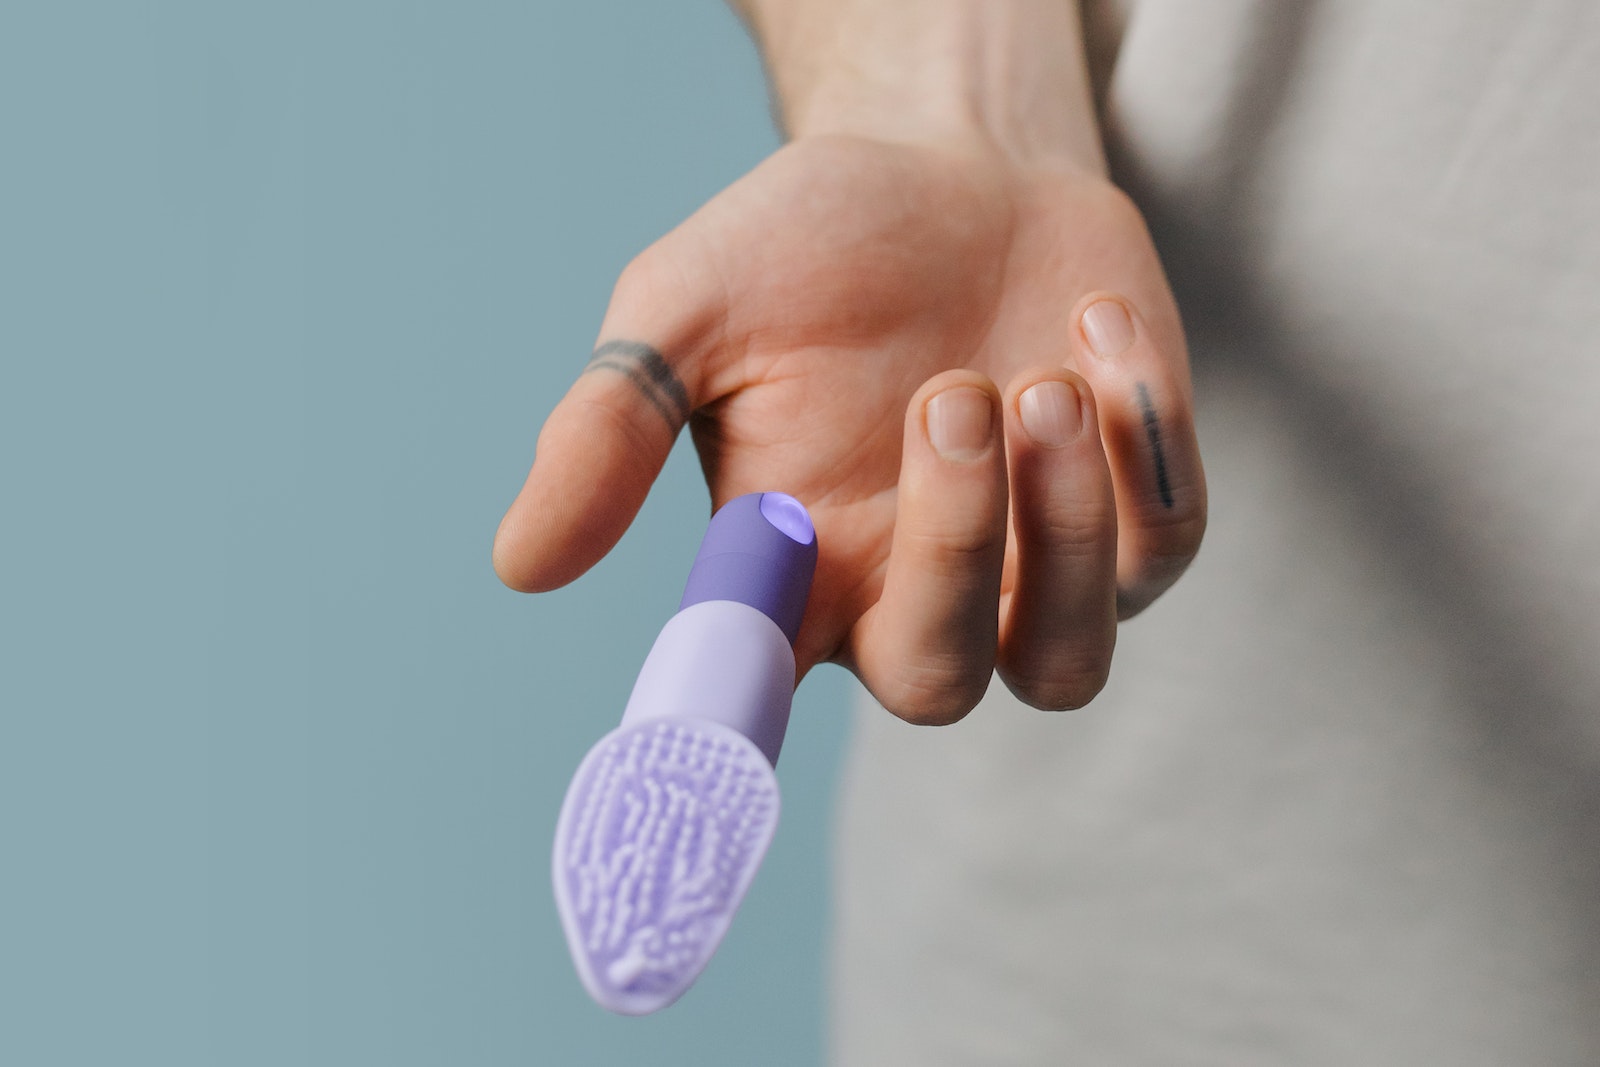 Purple Finger Vibrator in the Person's Finger